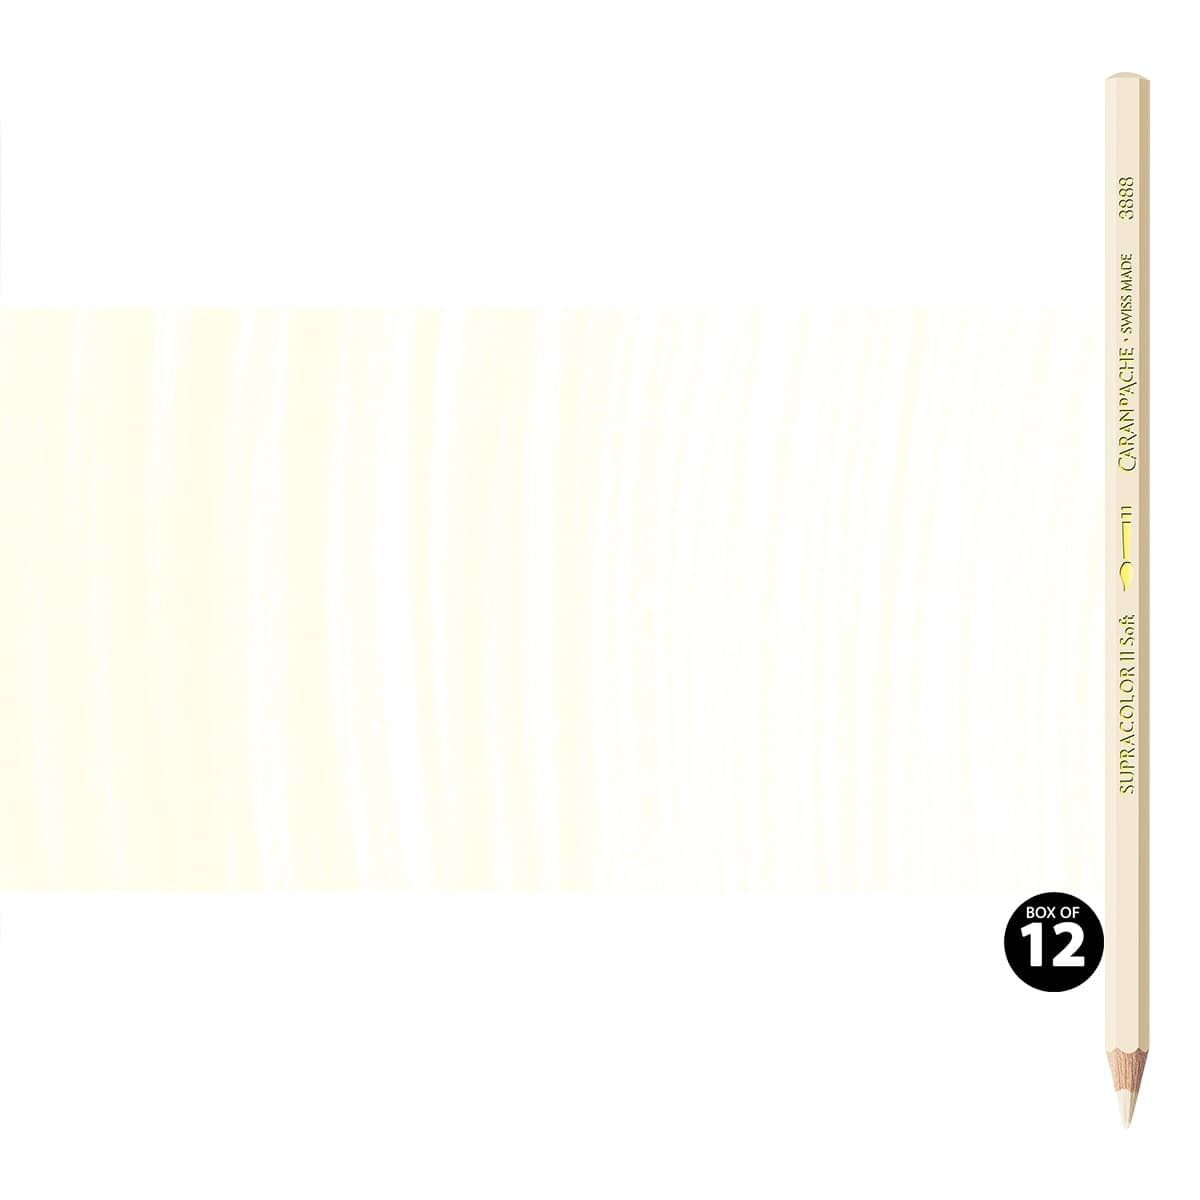 Supracolor II Watercolor Pencils Box of 12 No. 491 - Cream